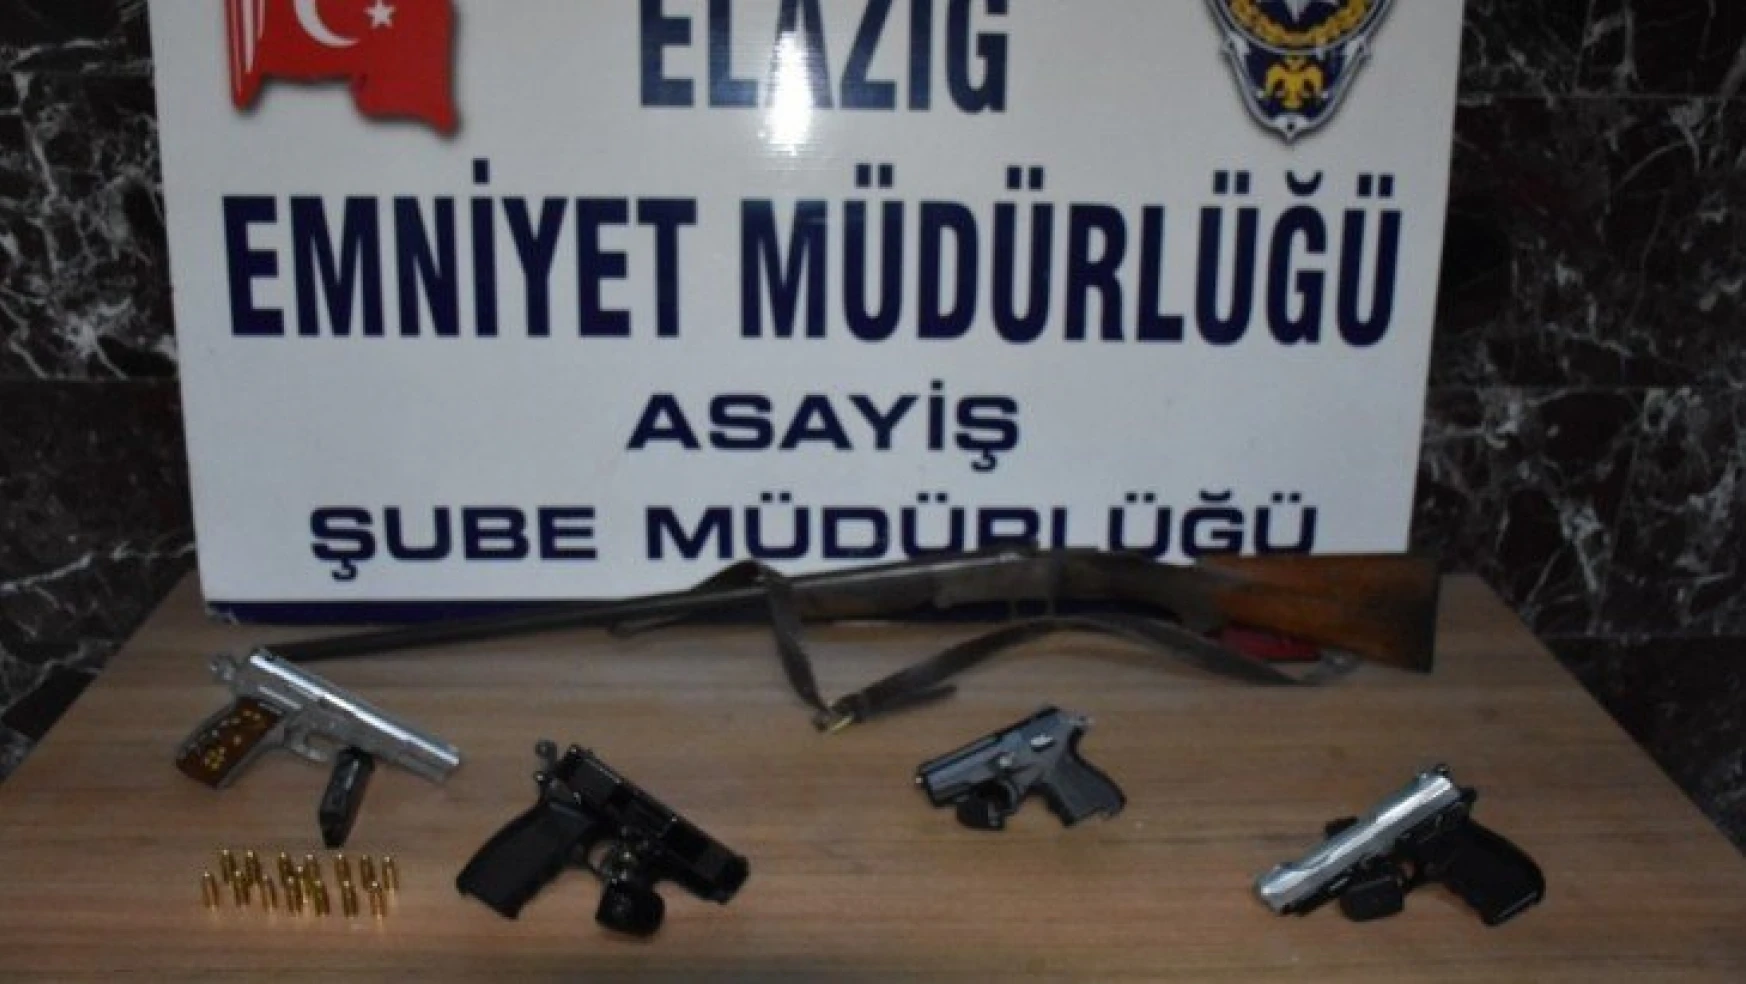 Elazığ'da çeşitli suçlardan aranıp yakalanan 30 şüpheli tutuklandı